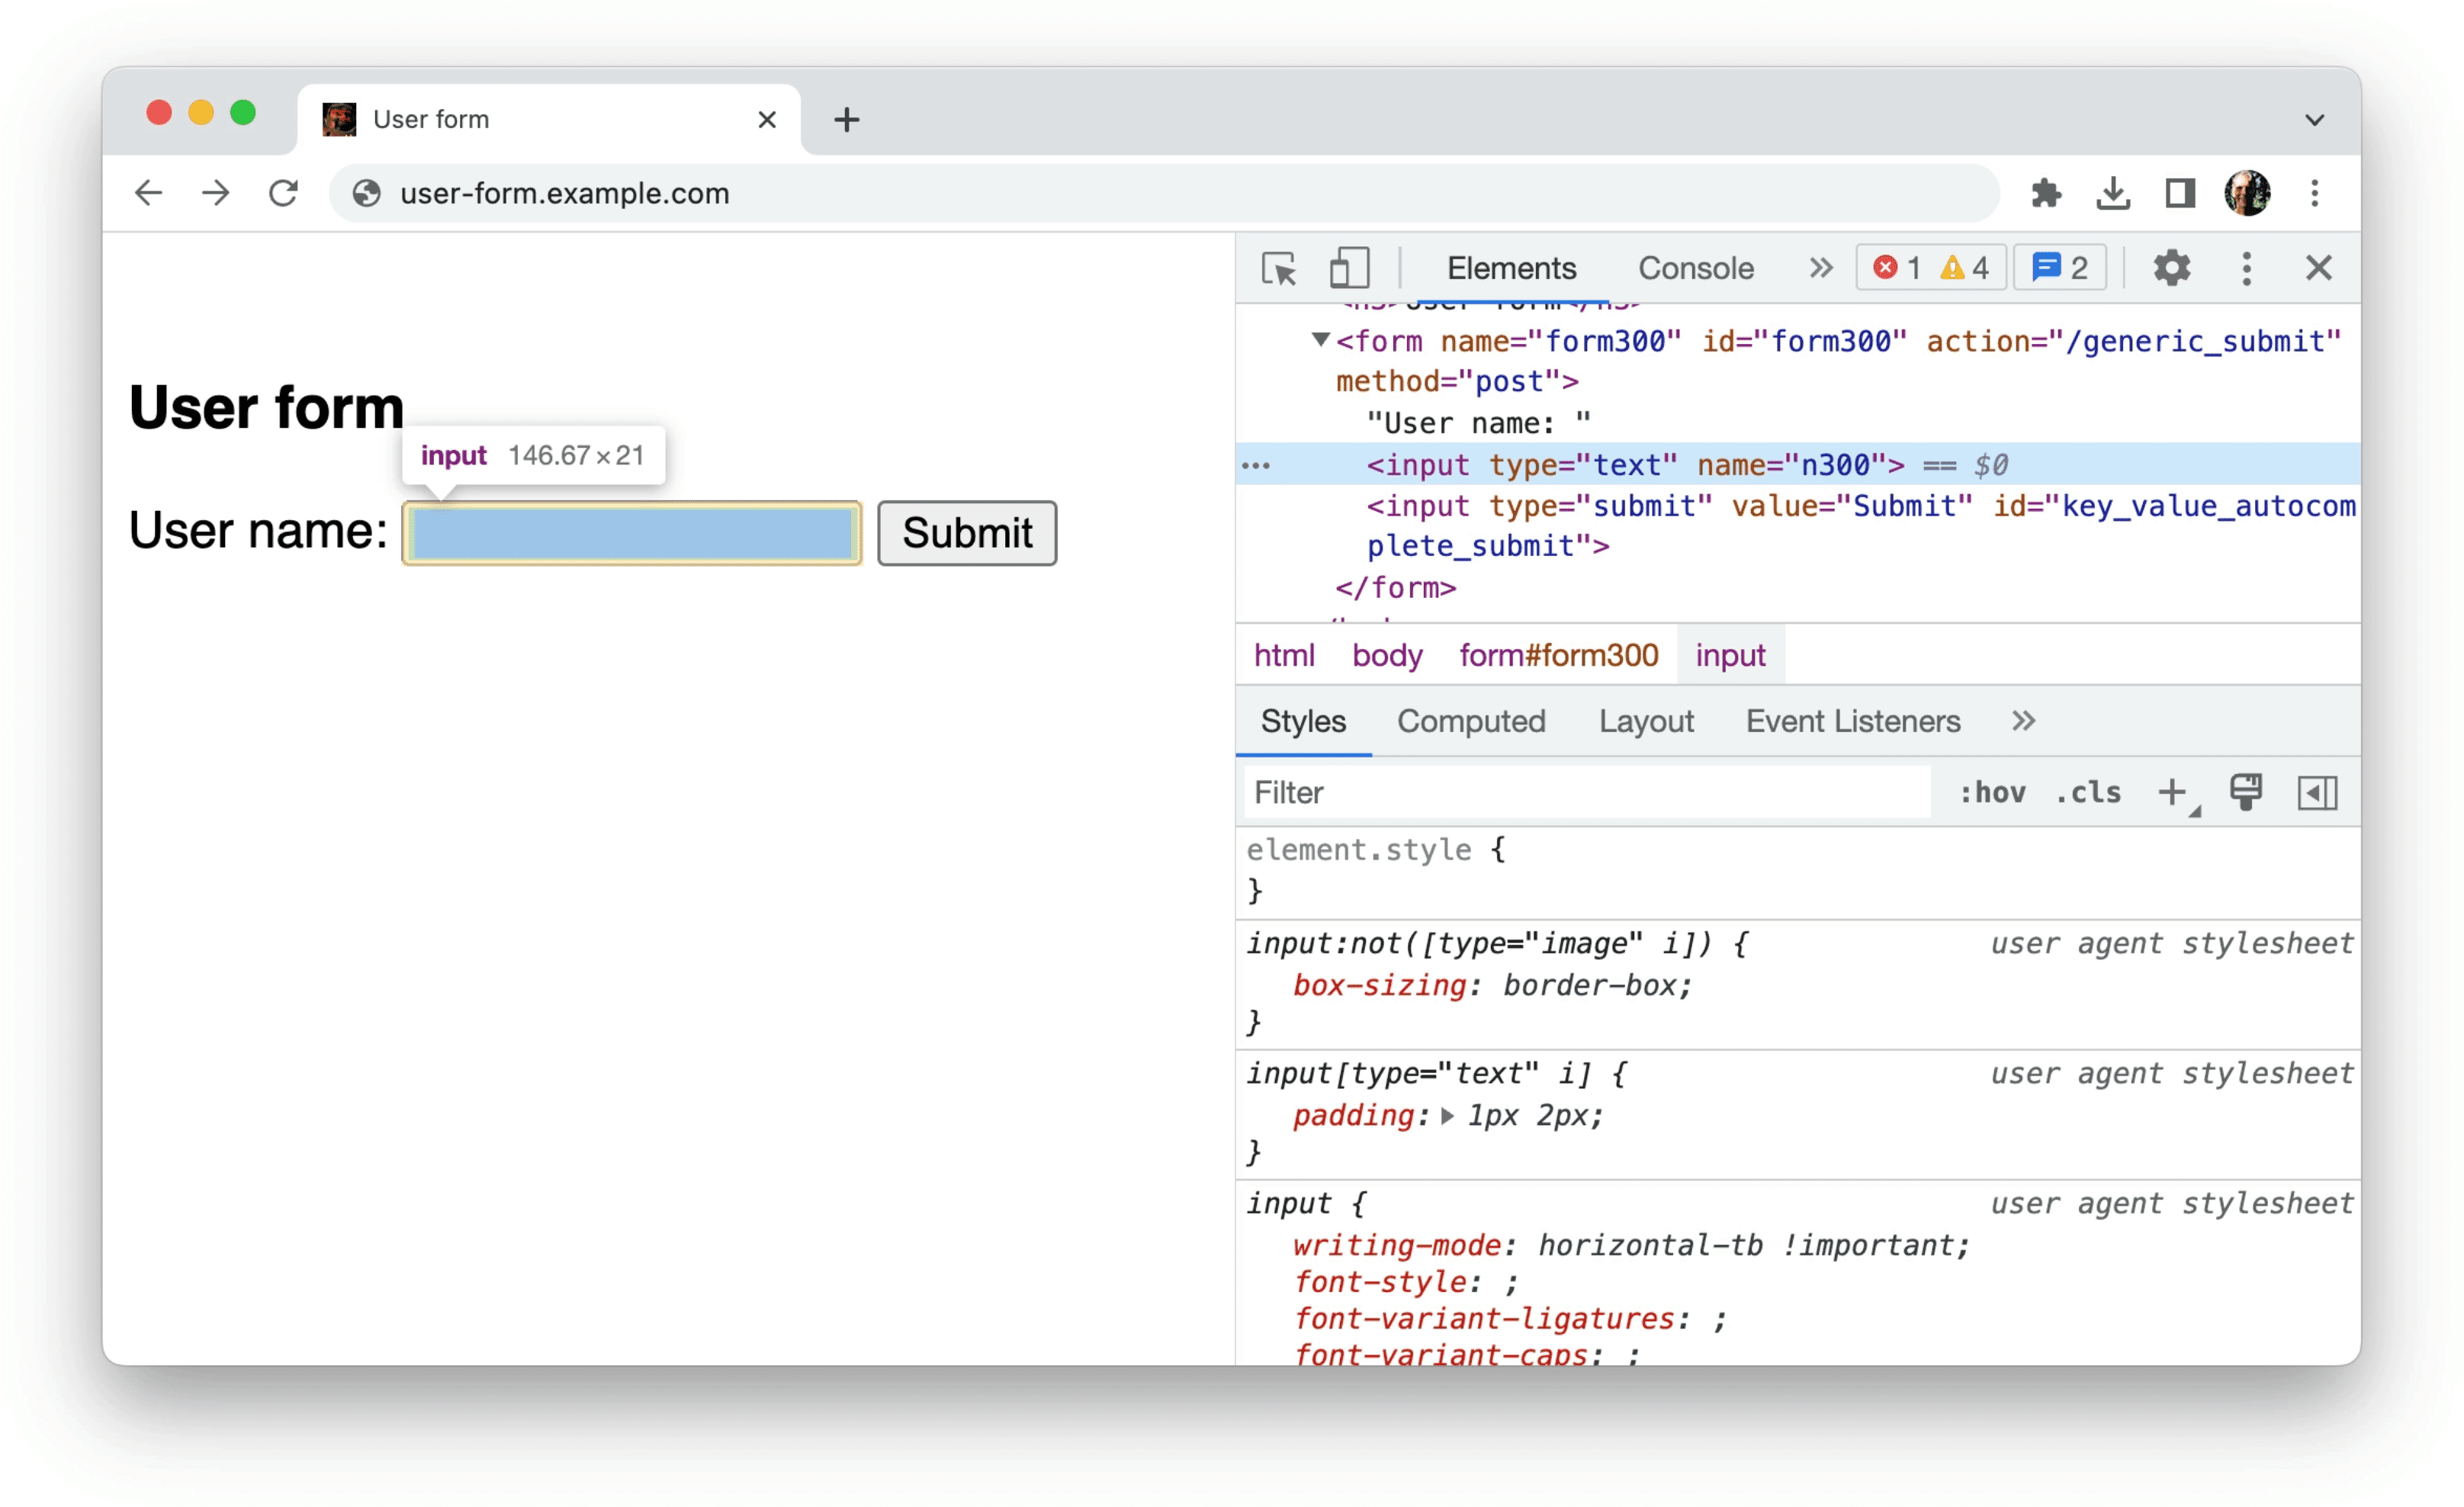 Las Herramientas para desarrolladores de Chrome muestran información sobre los datos no estructurados en un formato, como se muestra en el ejemplo anterior: una sola entrada que solo tiene los atributos type=text y name=n300.